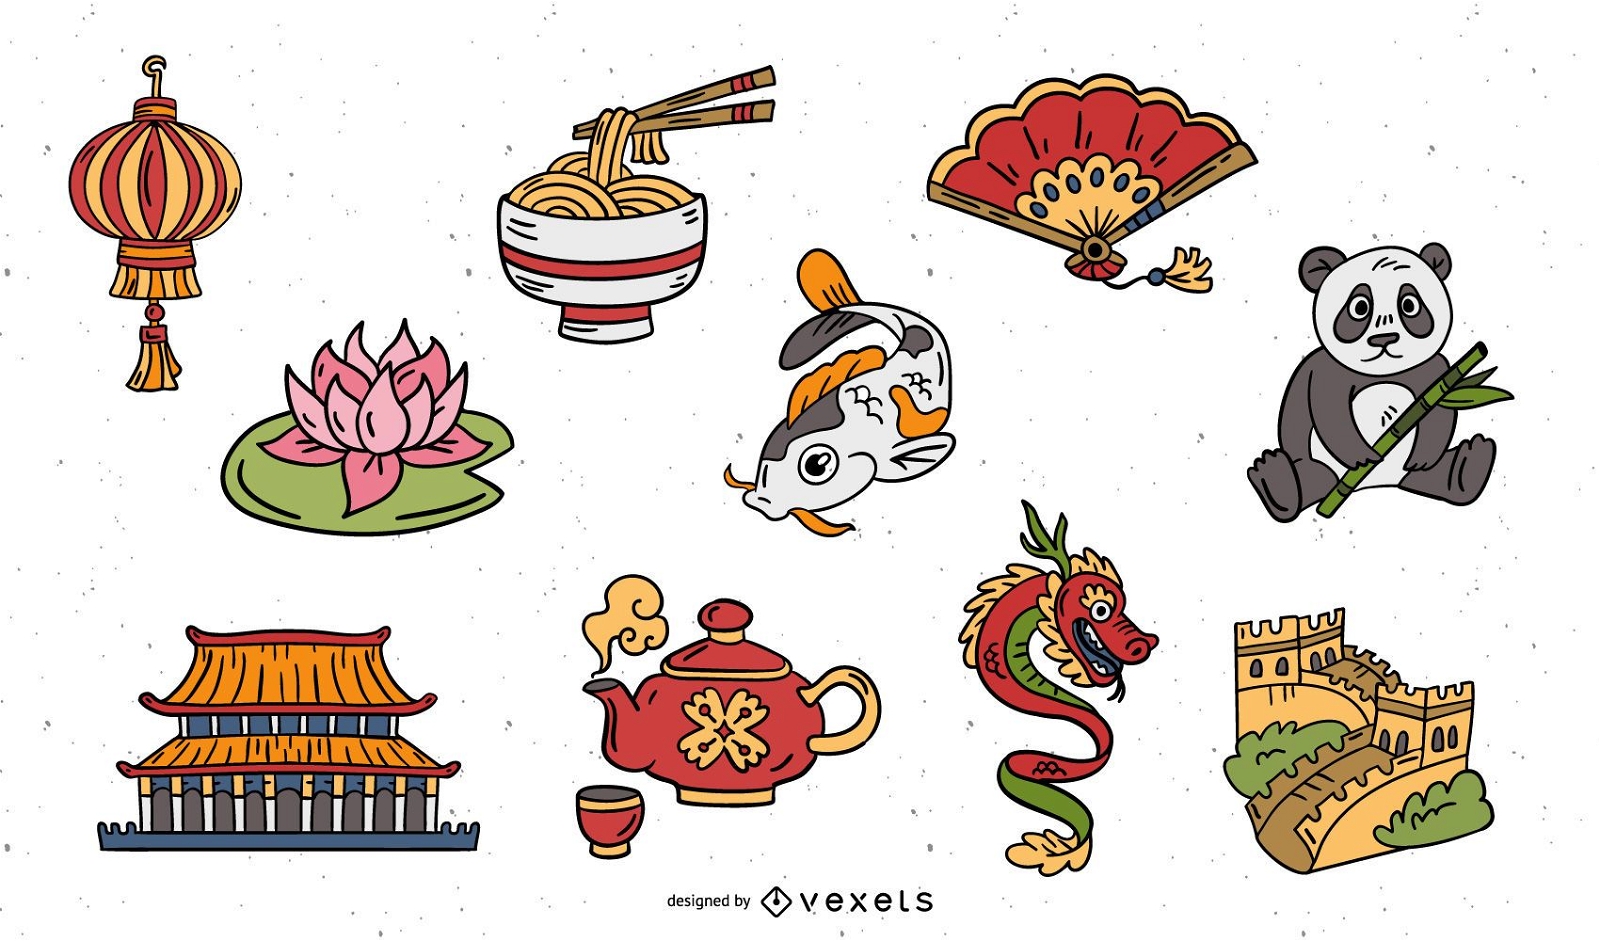 Conjunto de elementos chinos dibujados a mano